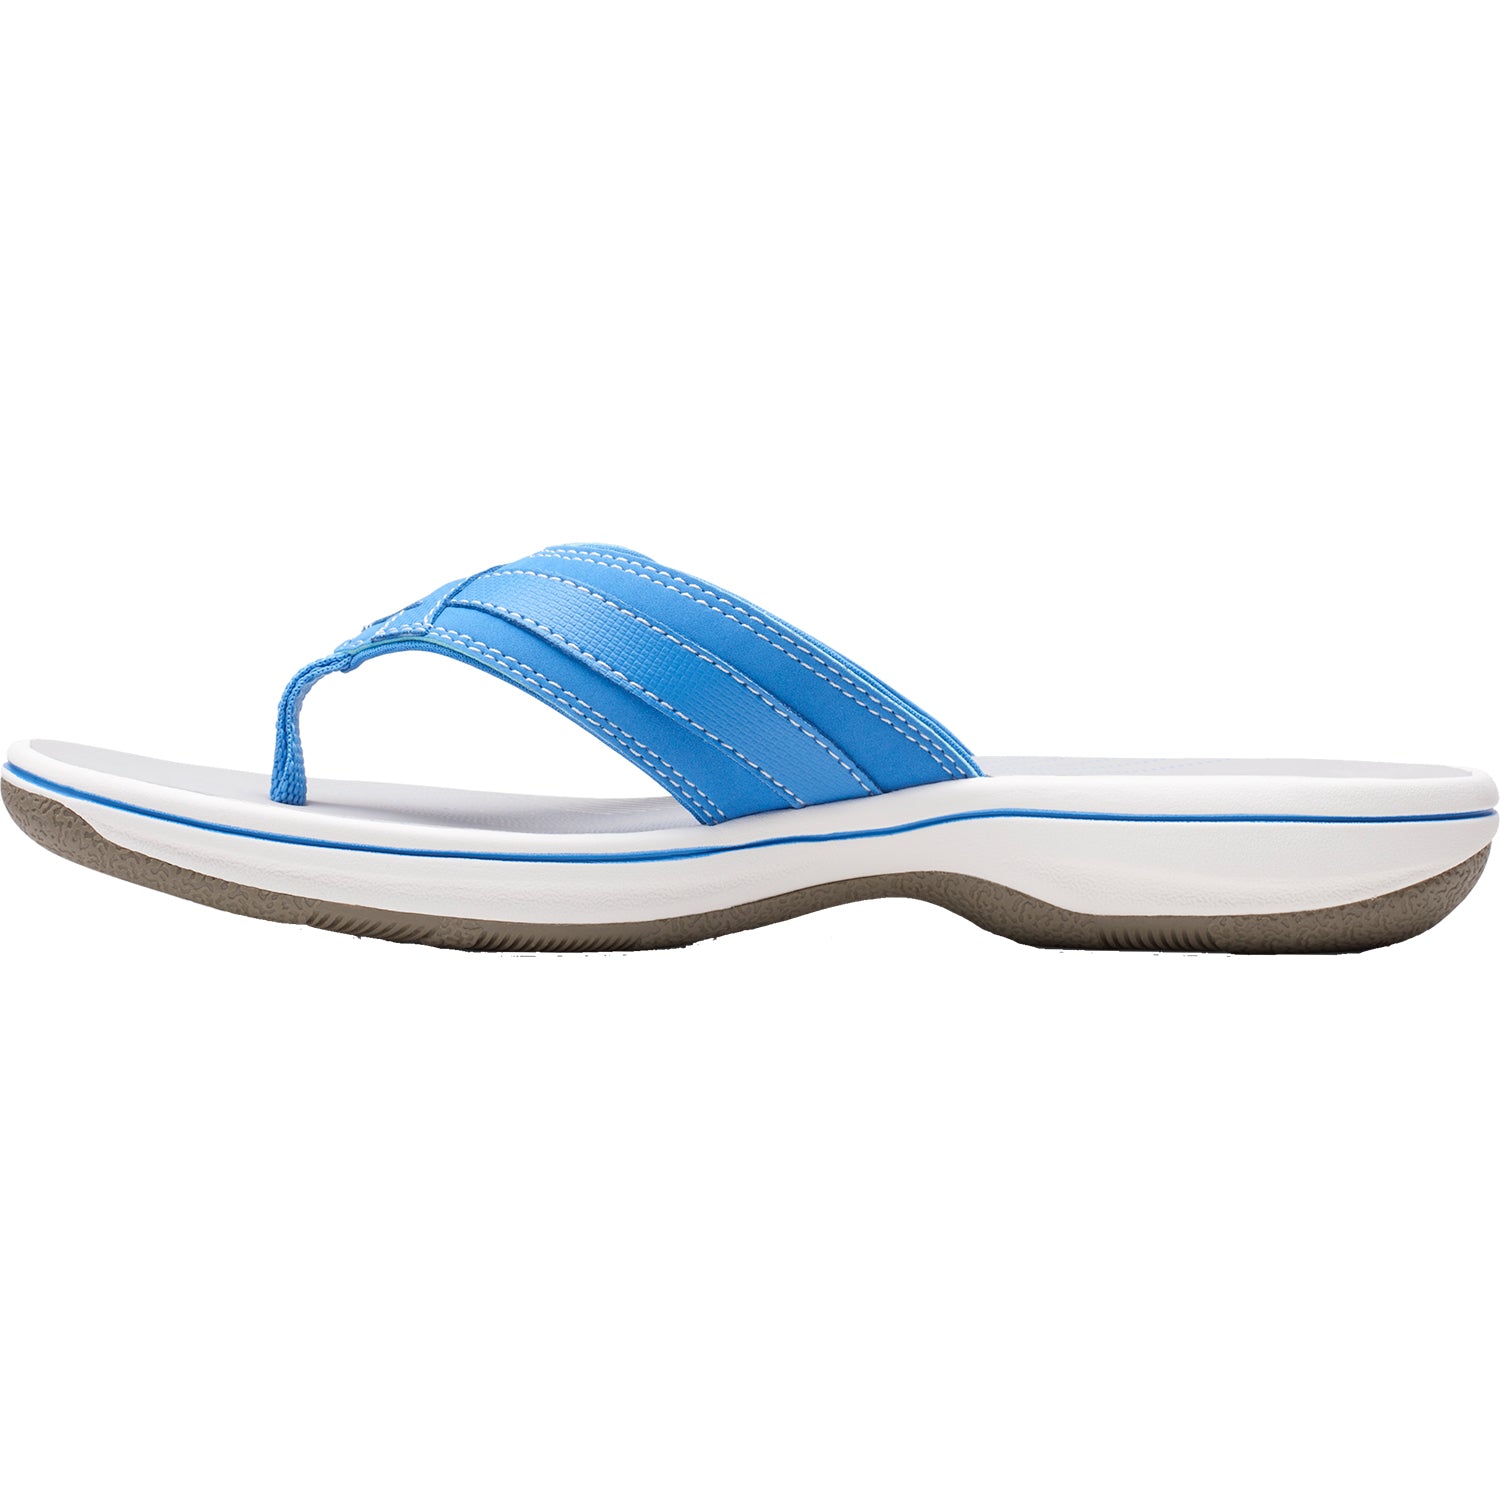 Clarks Breeze Sea Blue | Women's Flip Flops | Footwear etc.